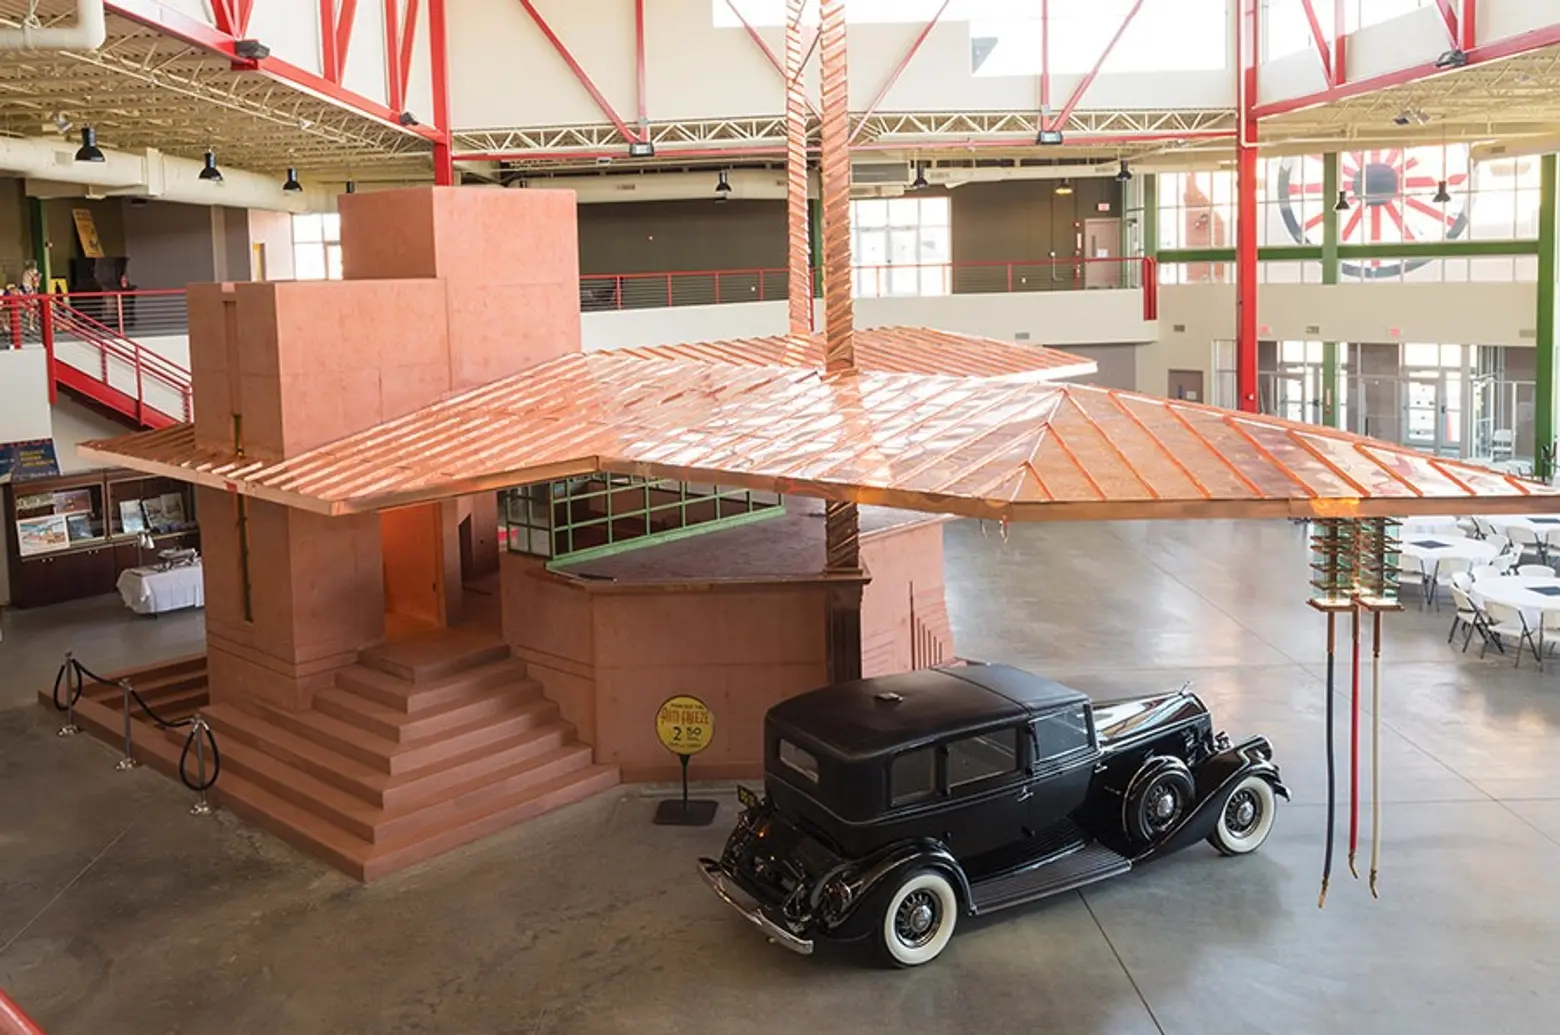 90 Years Later, Frank Lloyd Wright’s Fuel Station Finally Built in Buffalo, NY